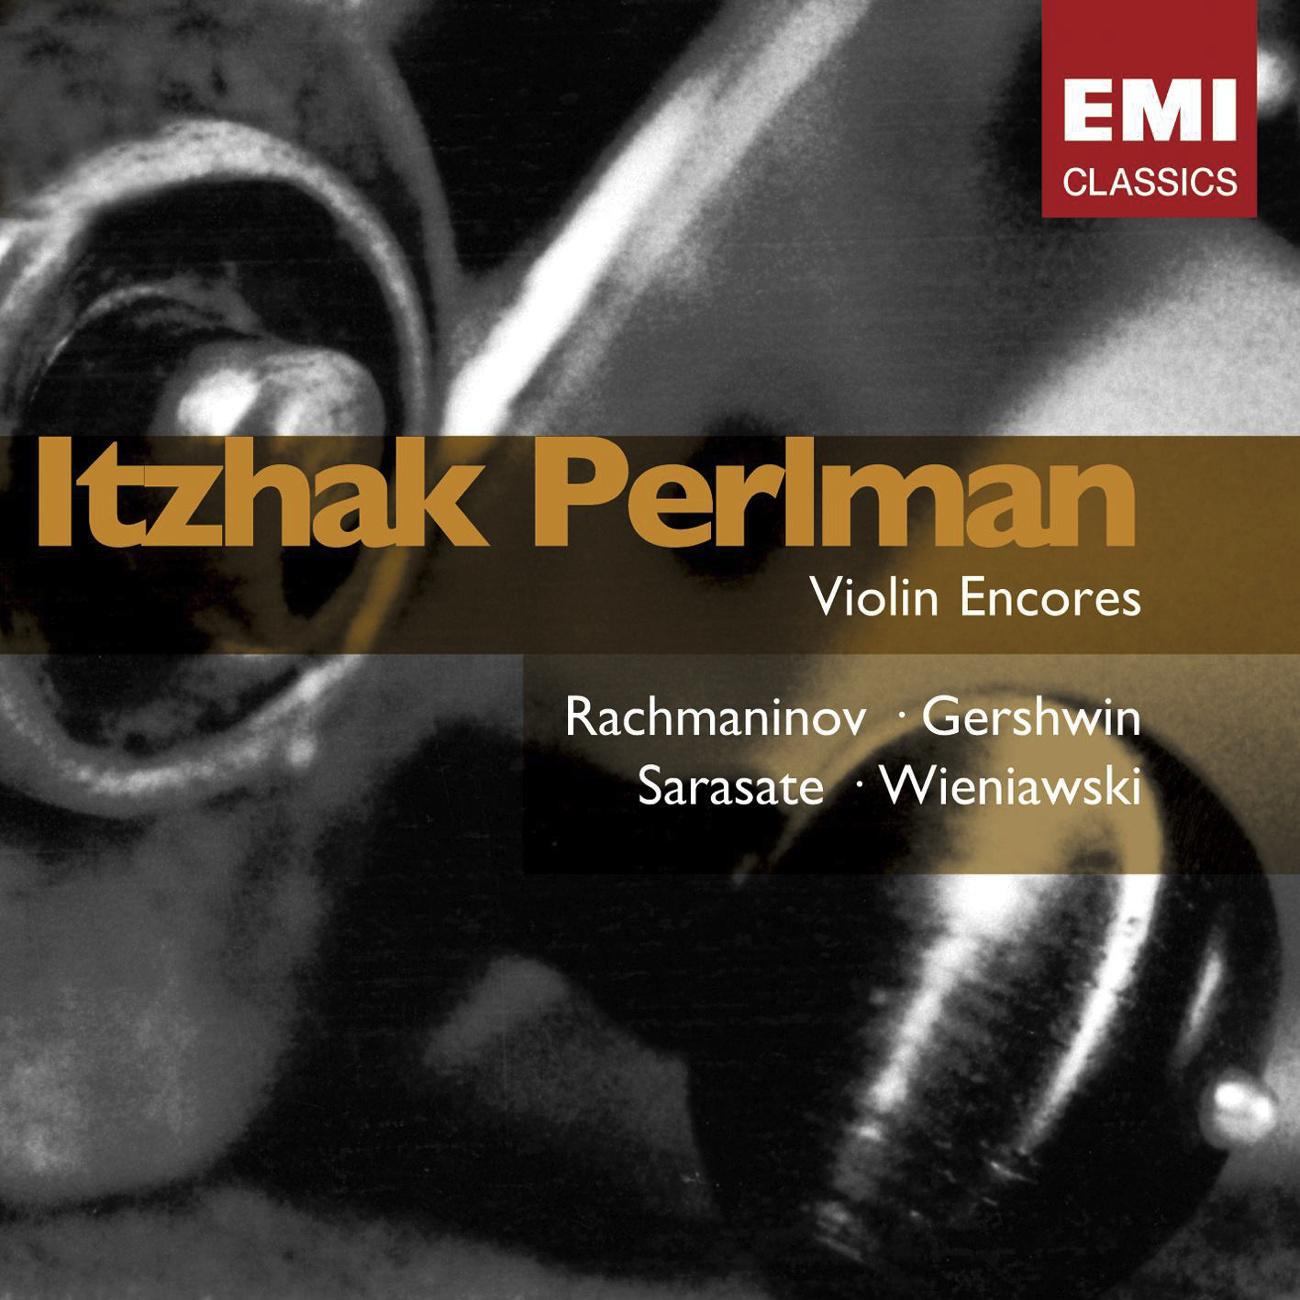 Violin Encores: Perlman专辑